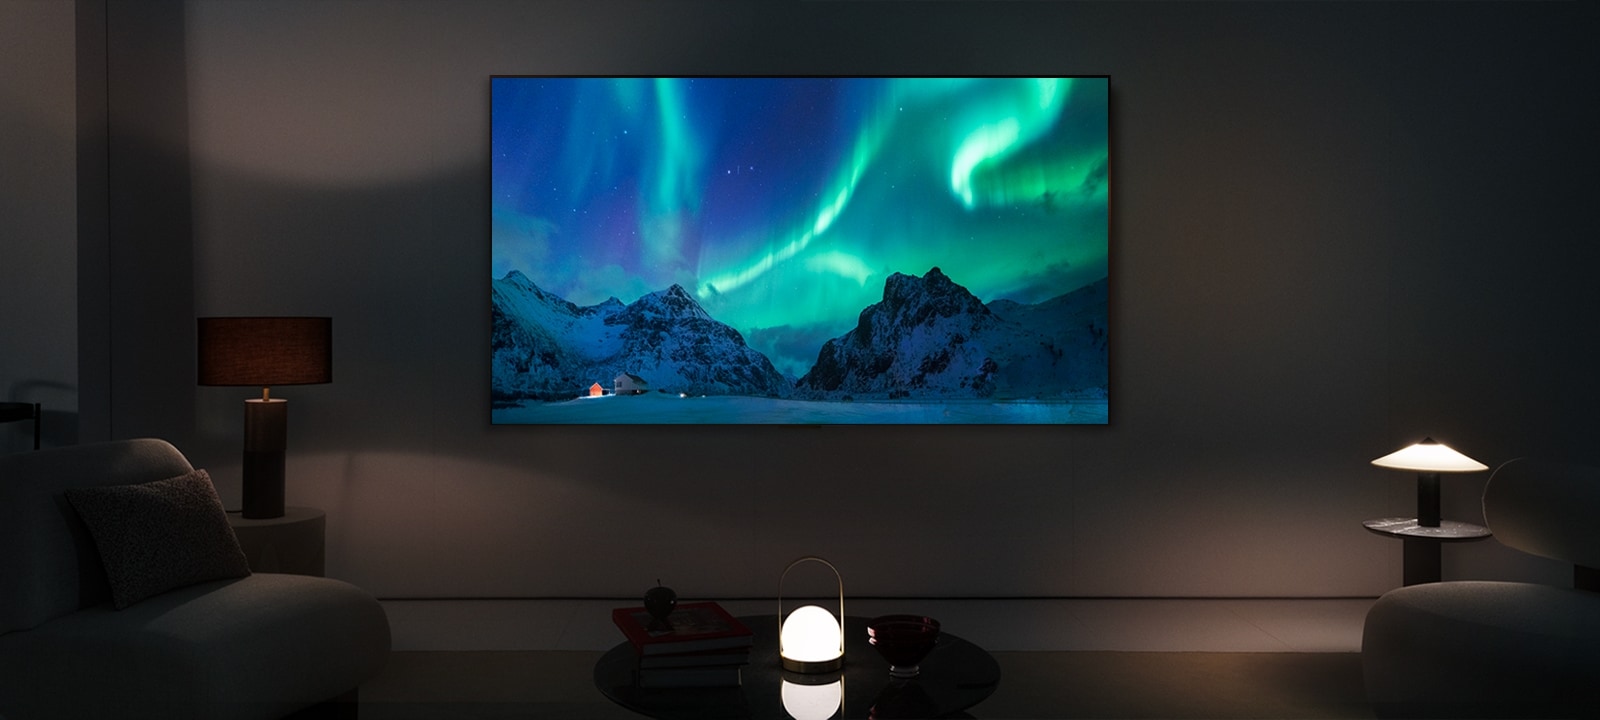 夜の現代的な生活空間に設置されたLG OLED TV。オーロラの画像が適切な輝度で表示される。